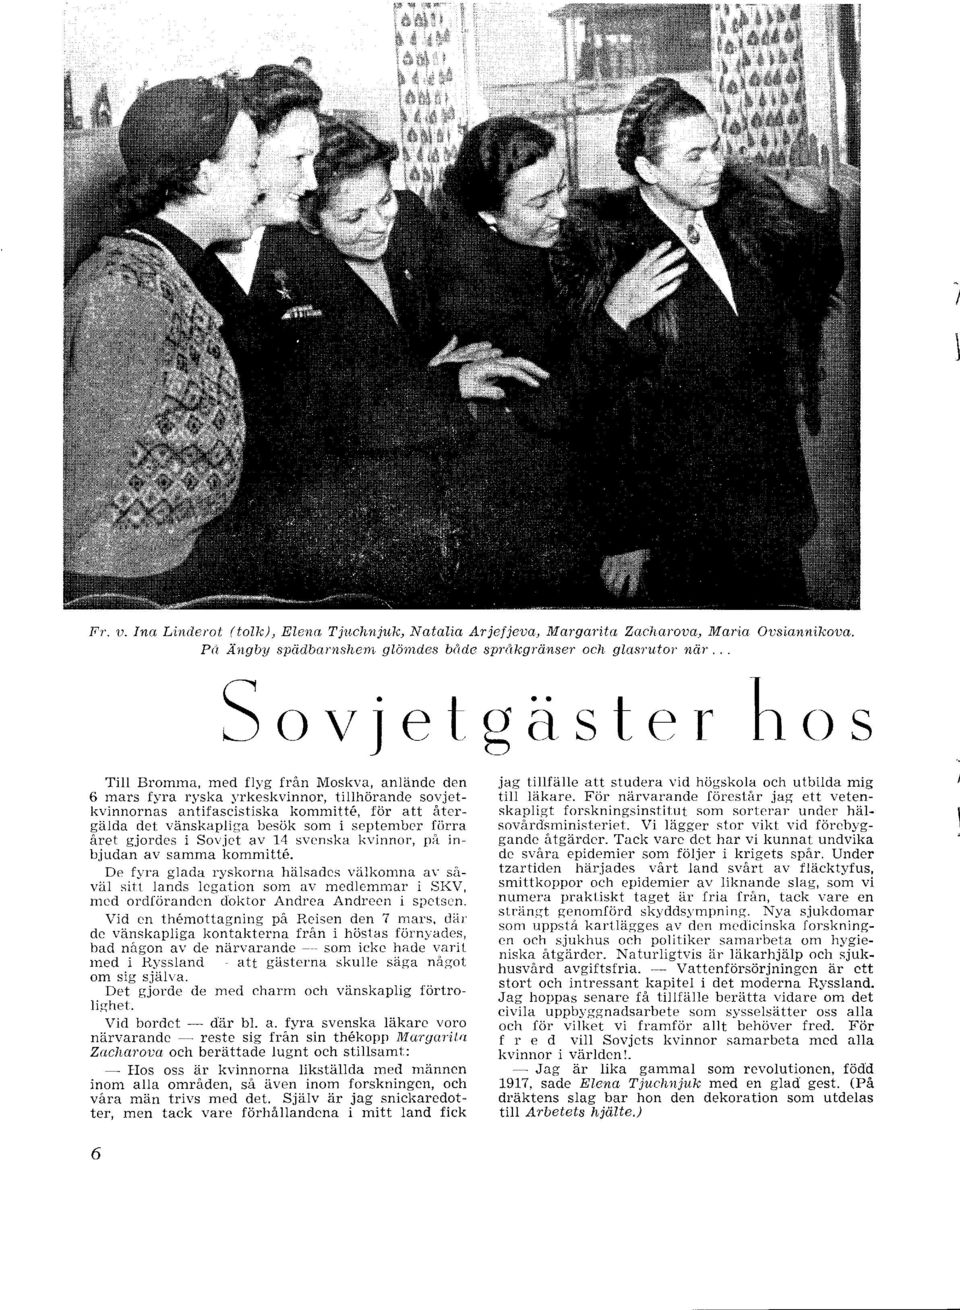 .. Sovjetgästerhos Till Bromma, med flyg från Moskva, anlände den 6 mars fyra ryska I'rkeskvinnor, tillhörande sovjetkvinnornas antifascistiska kommitte, för att återgälda det vänskapliga besök som i